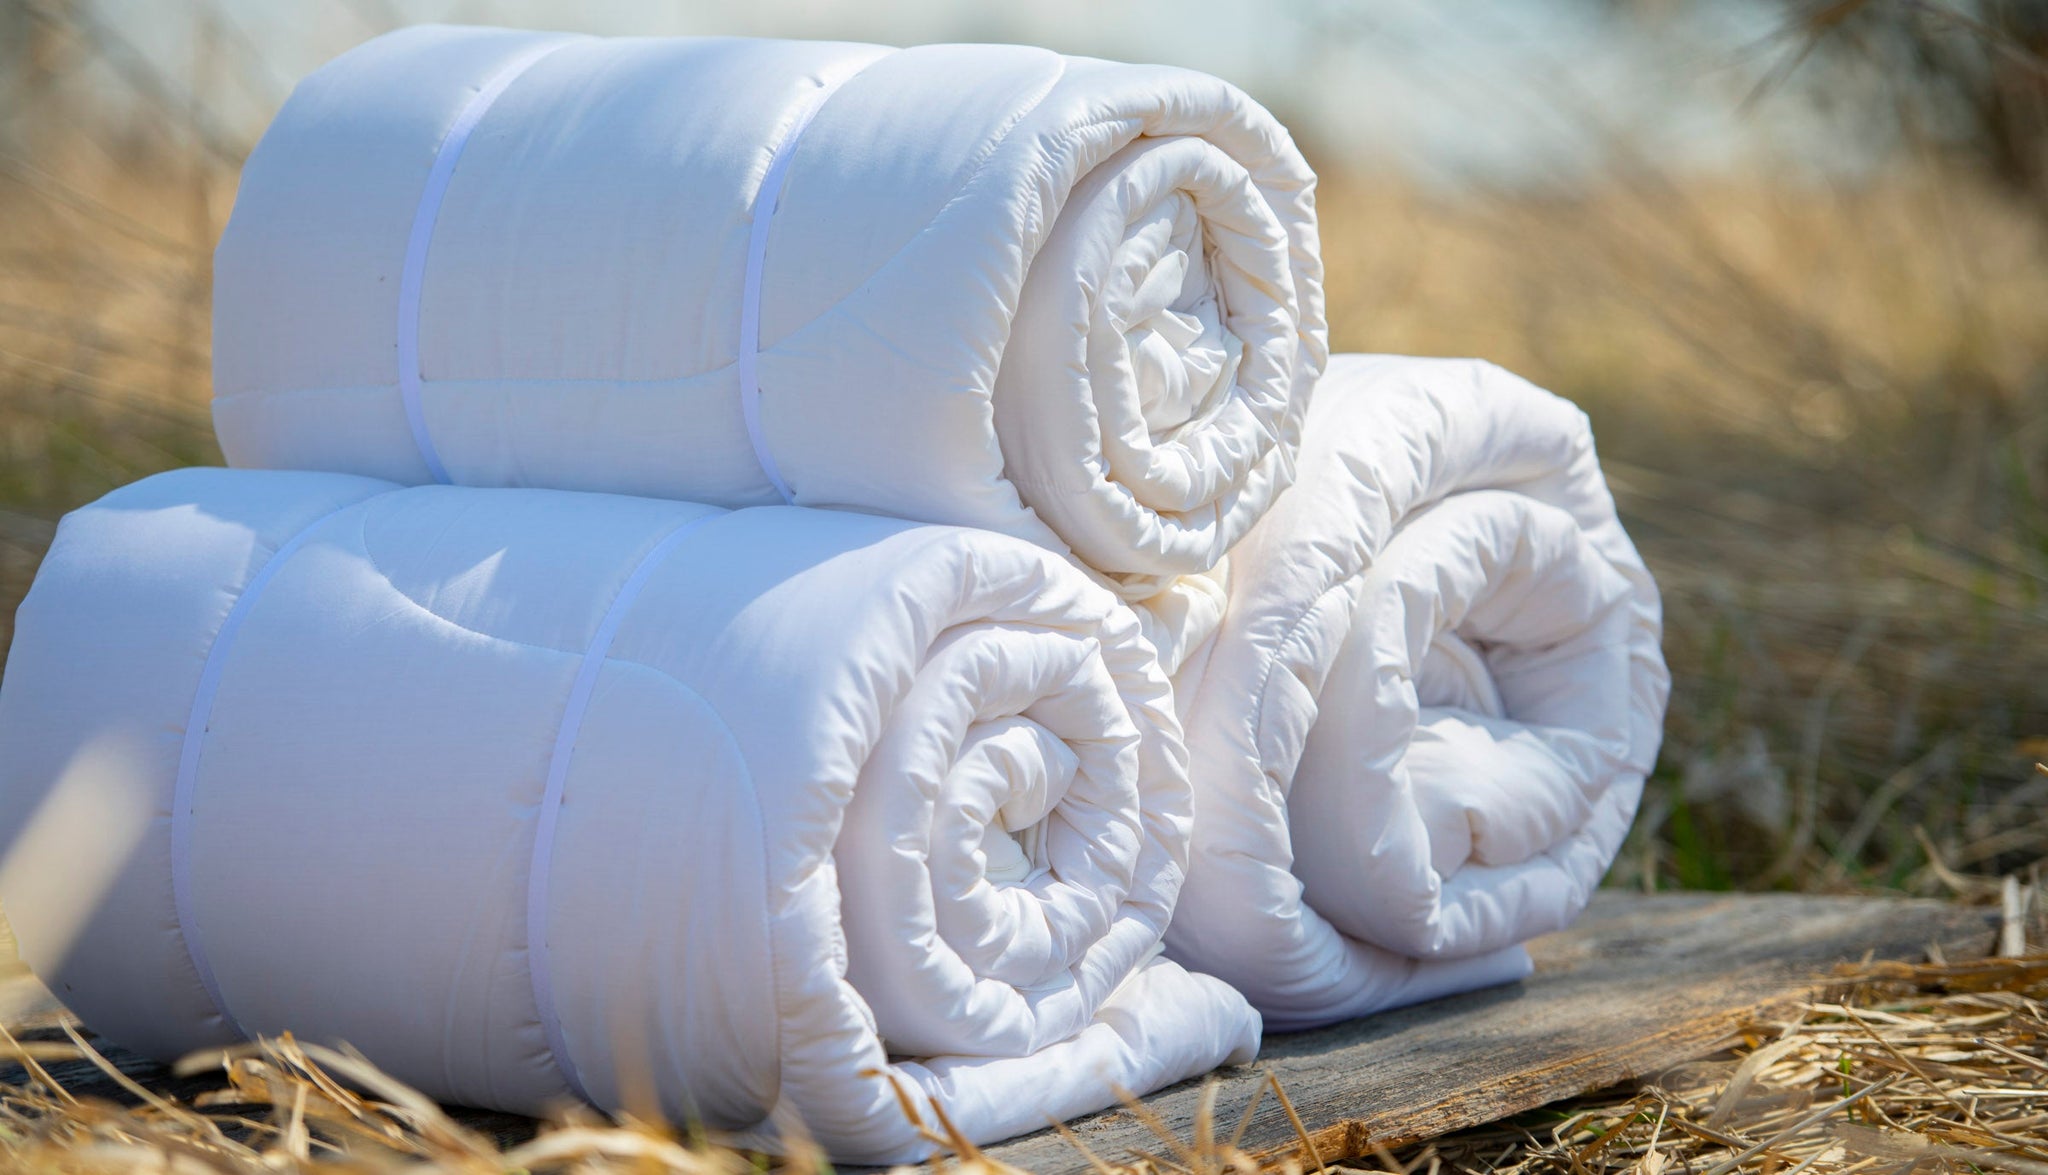 Wholesale Tufted Cotton Duvet Cover Sets Canada